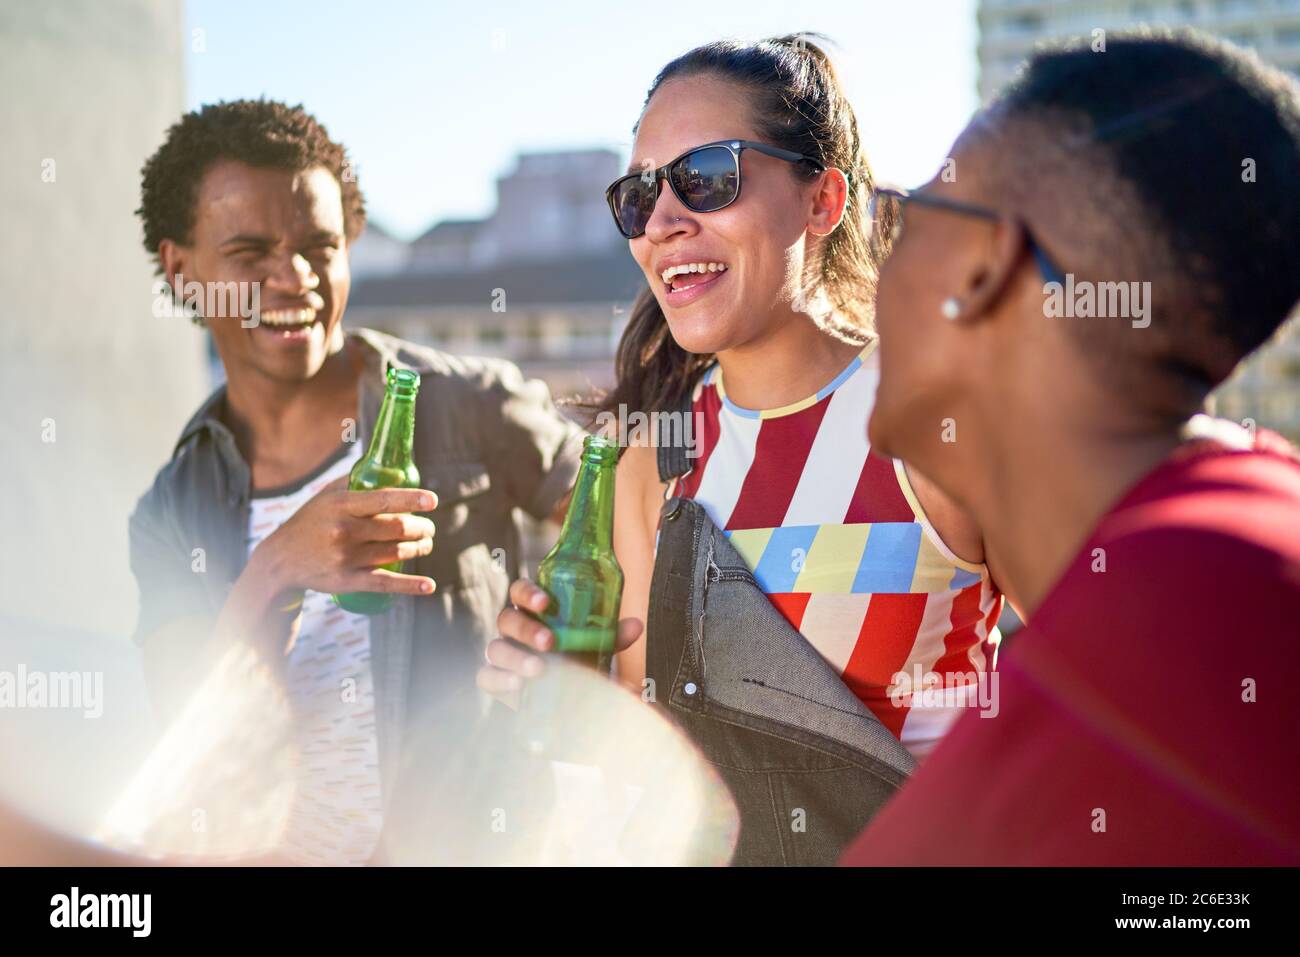 De jeunes amis heureux buvant de la bière sur un balcon ensoleillé Banque D'Images